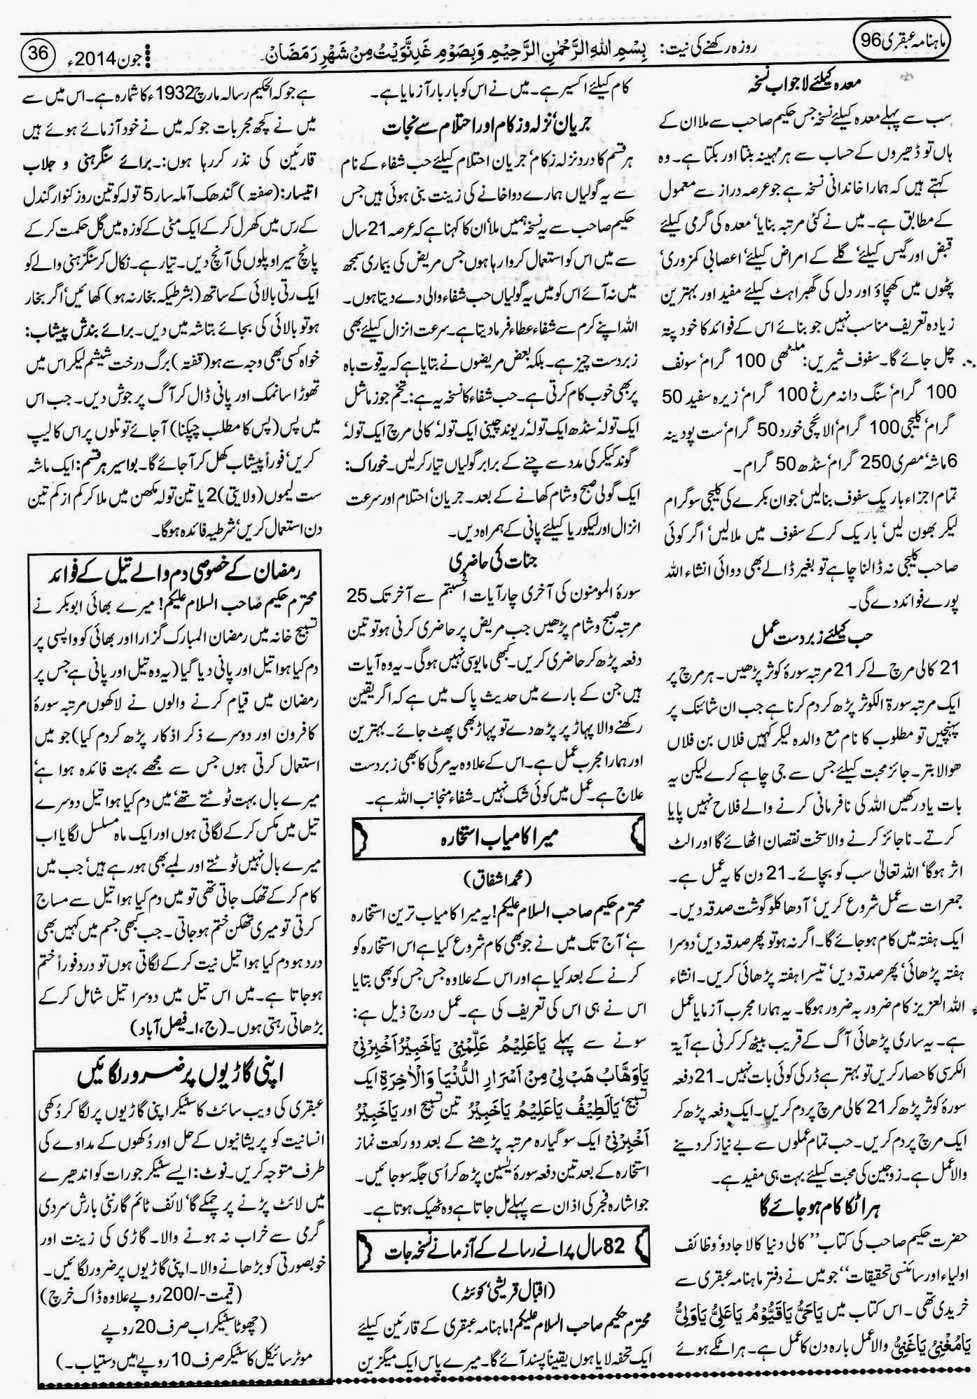 ubqari june 2014 page 36